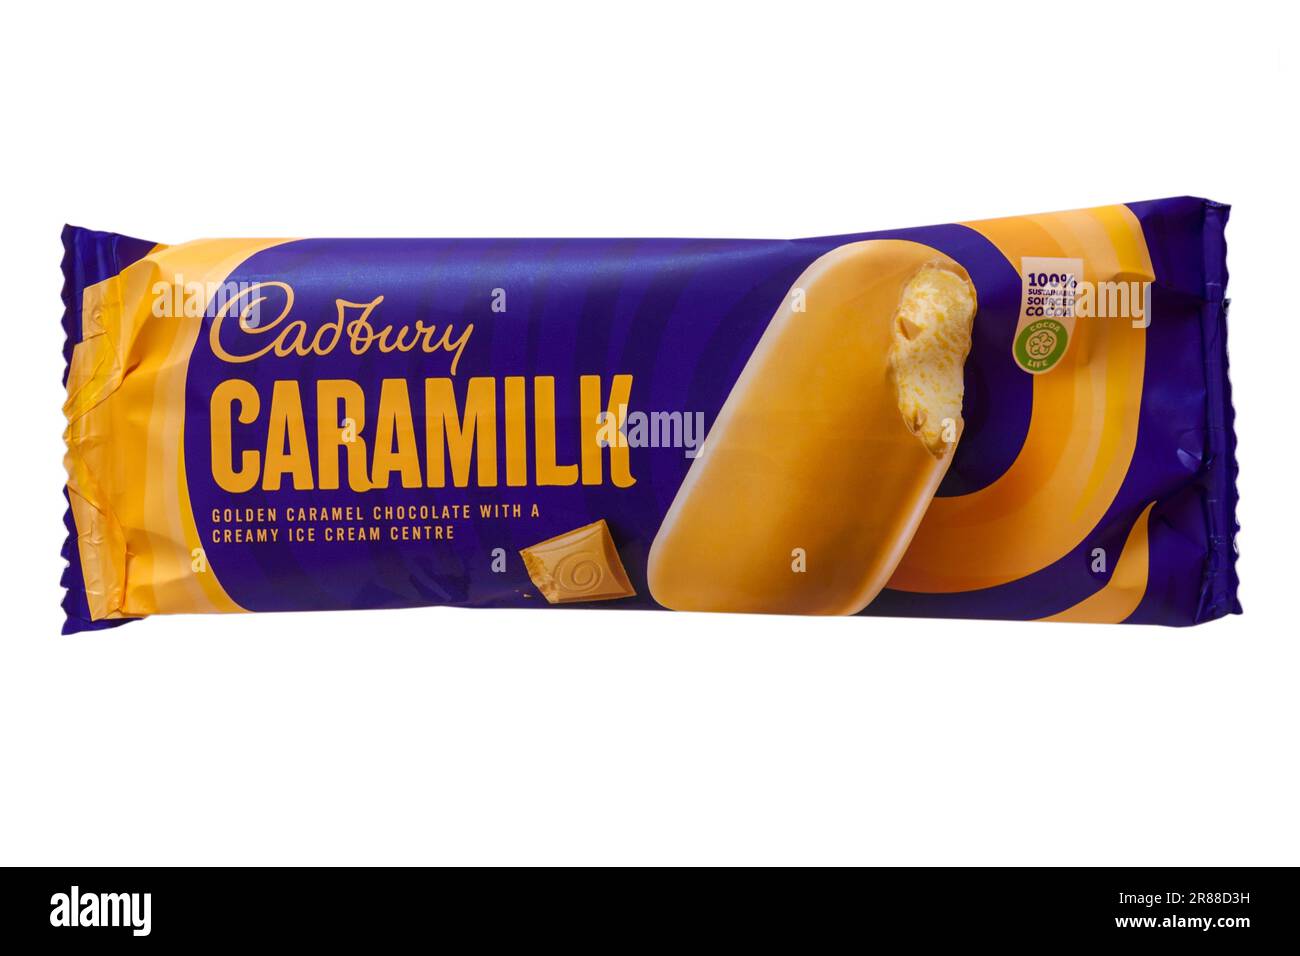 Gelato alla crema Cadbury Caramilk isolato su fondo bianco - cioccolato al caramello dorato con un centro gelato cremoso Foto Stock